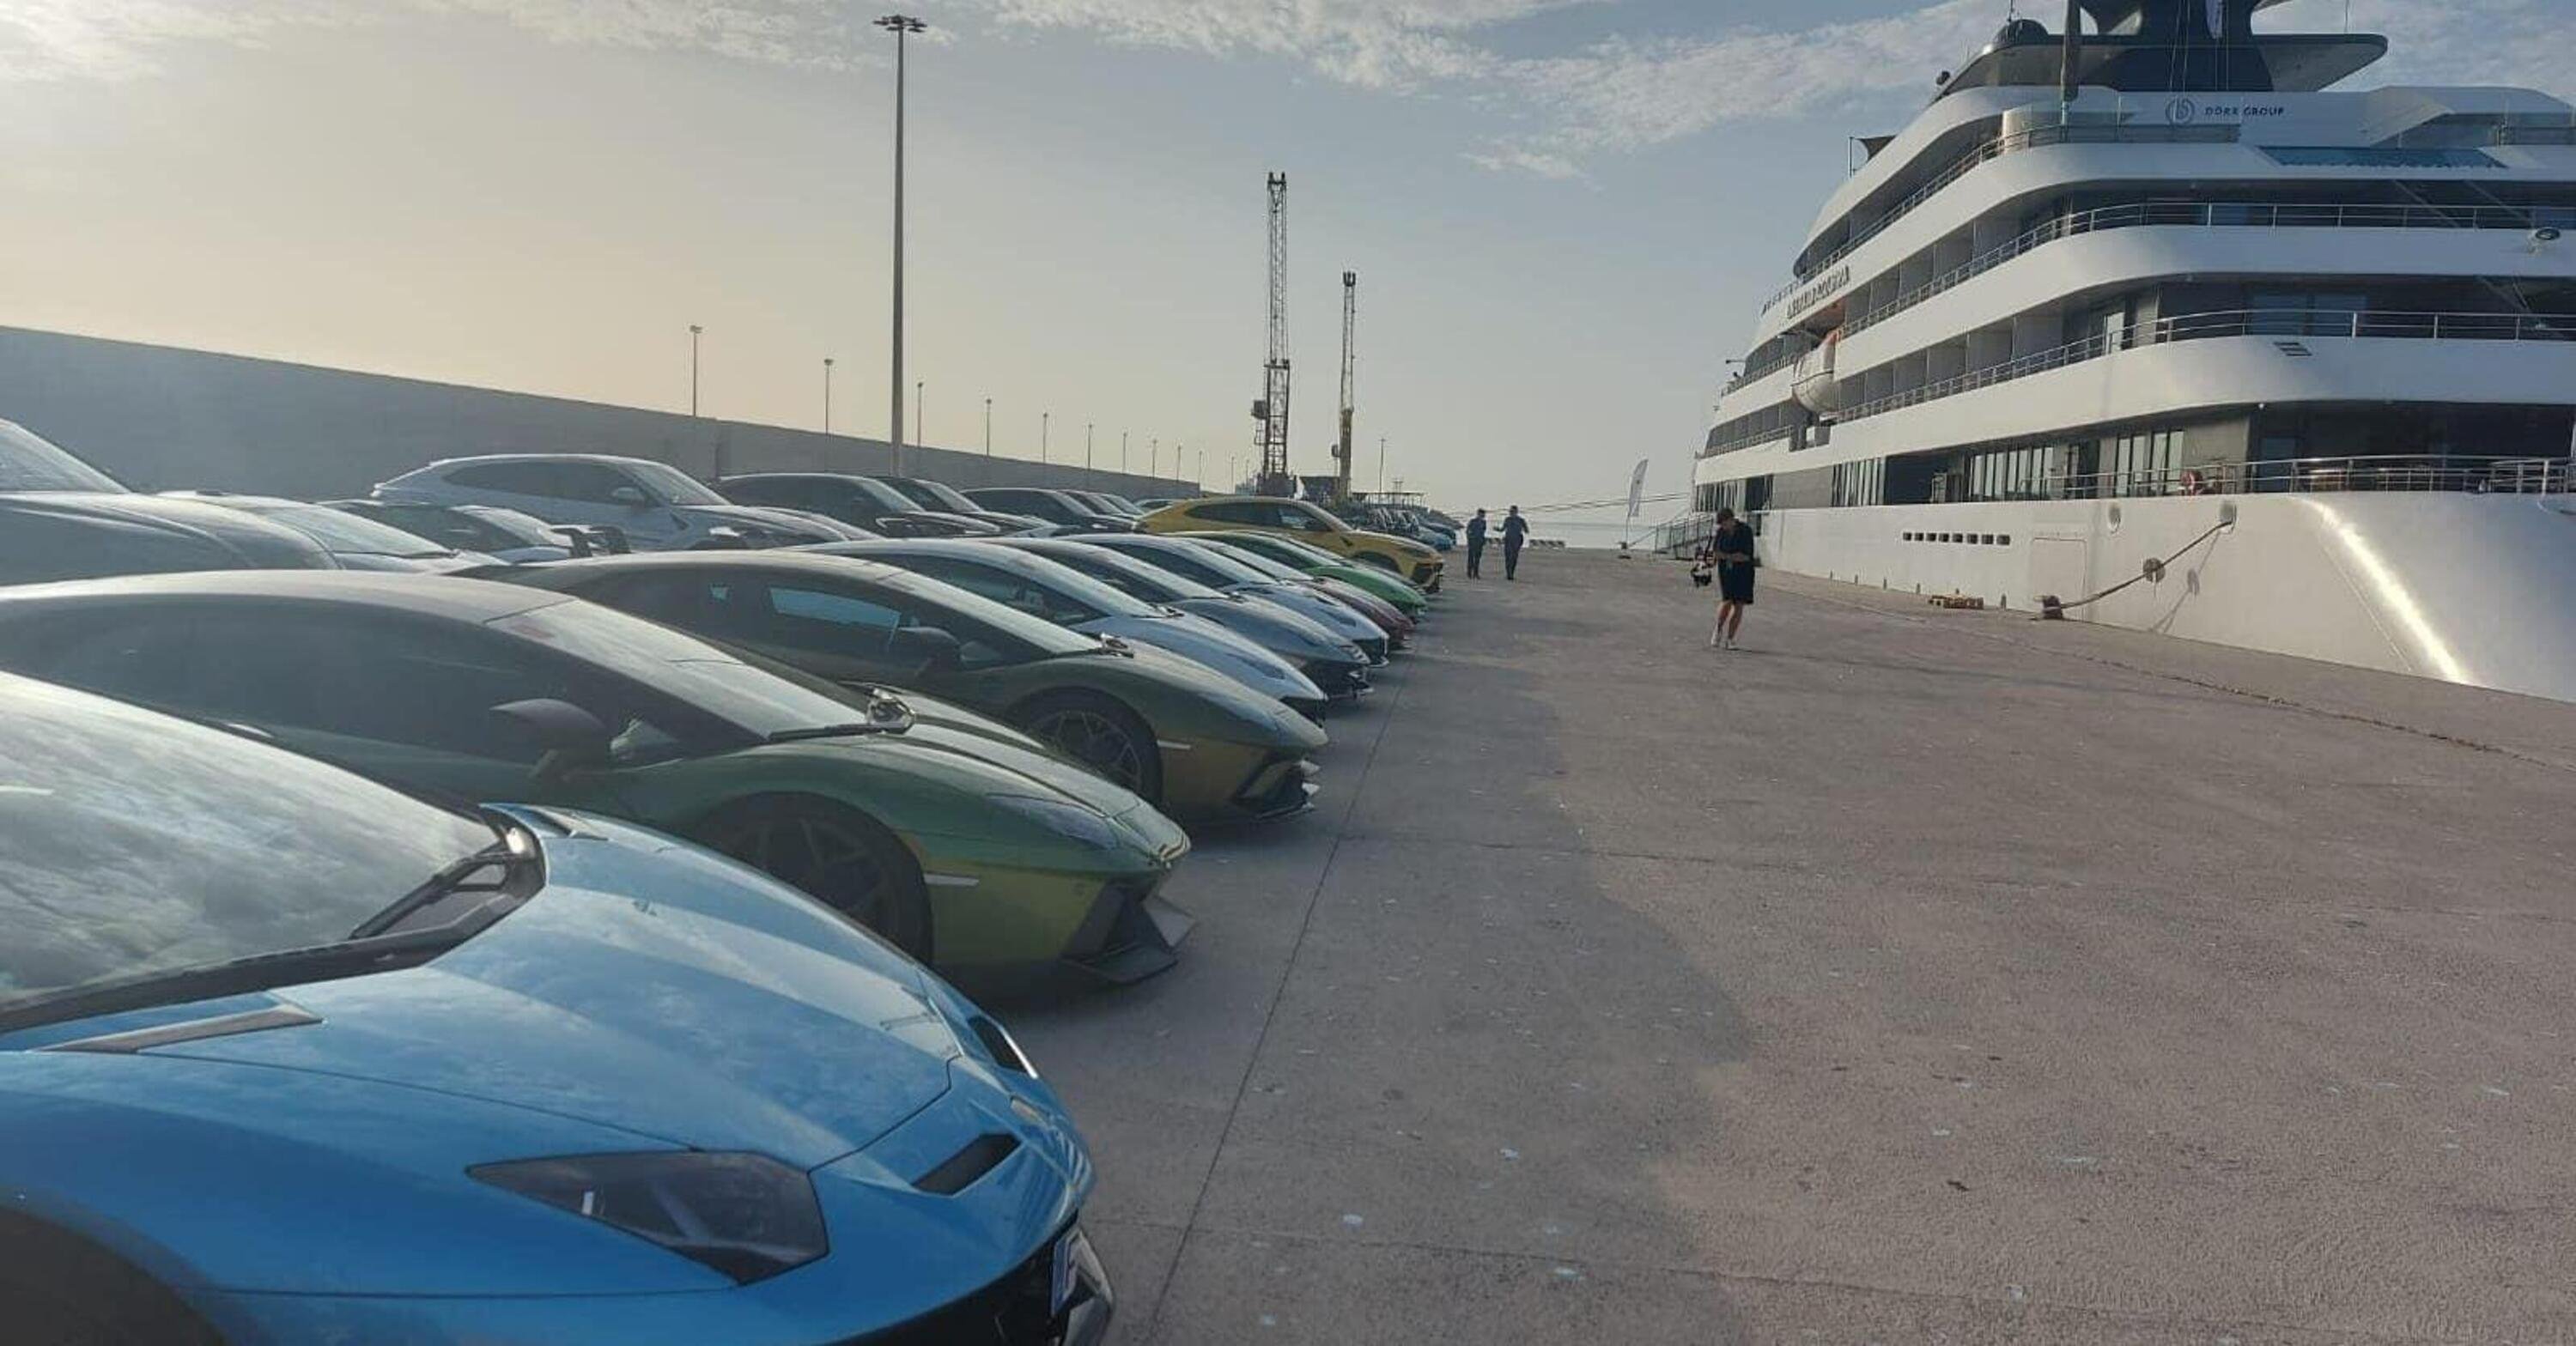 Cento Lamborghini in coda ad aspettare i passeggeri dello yacht di lusso